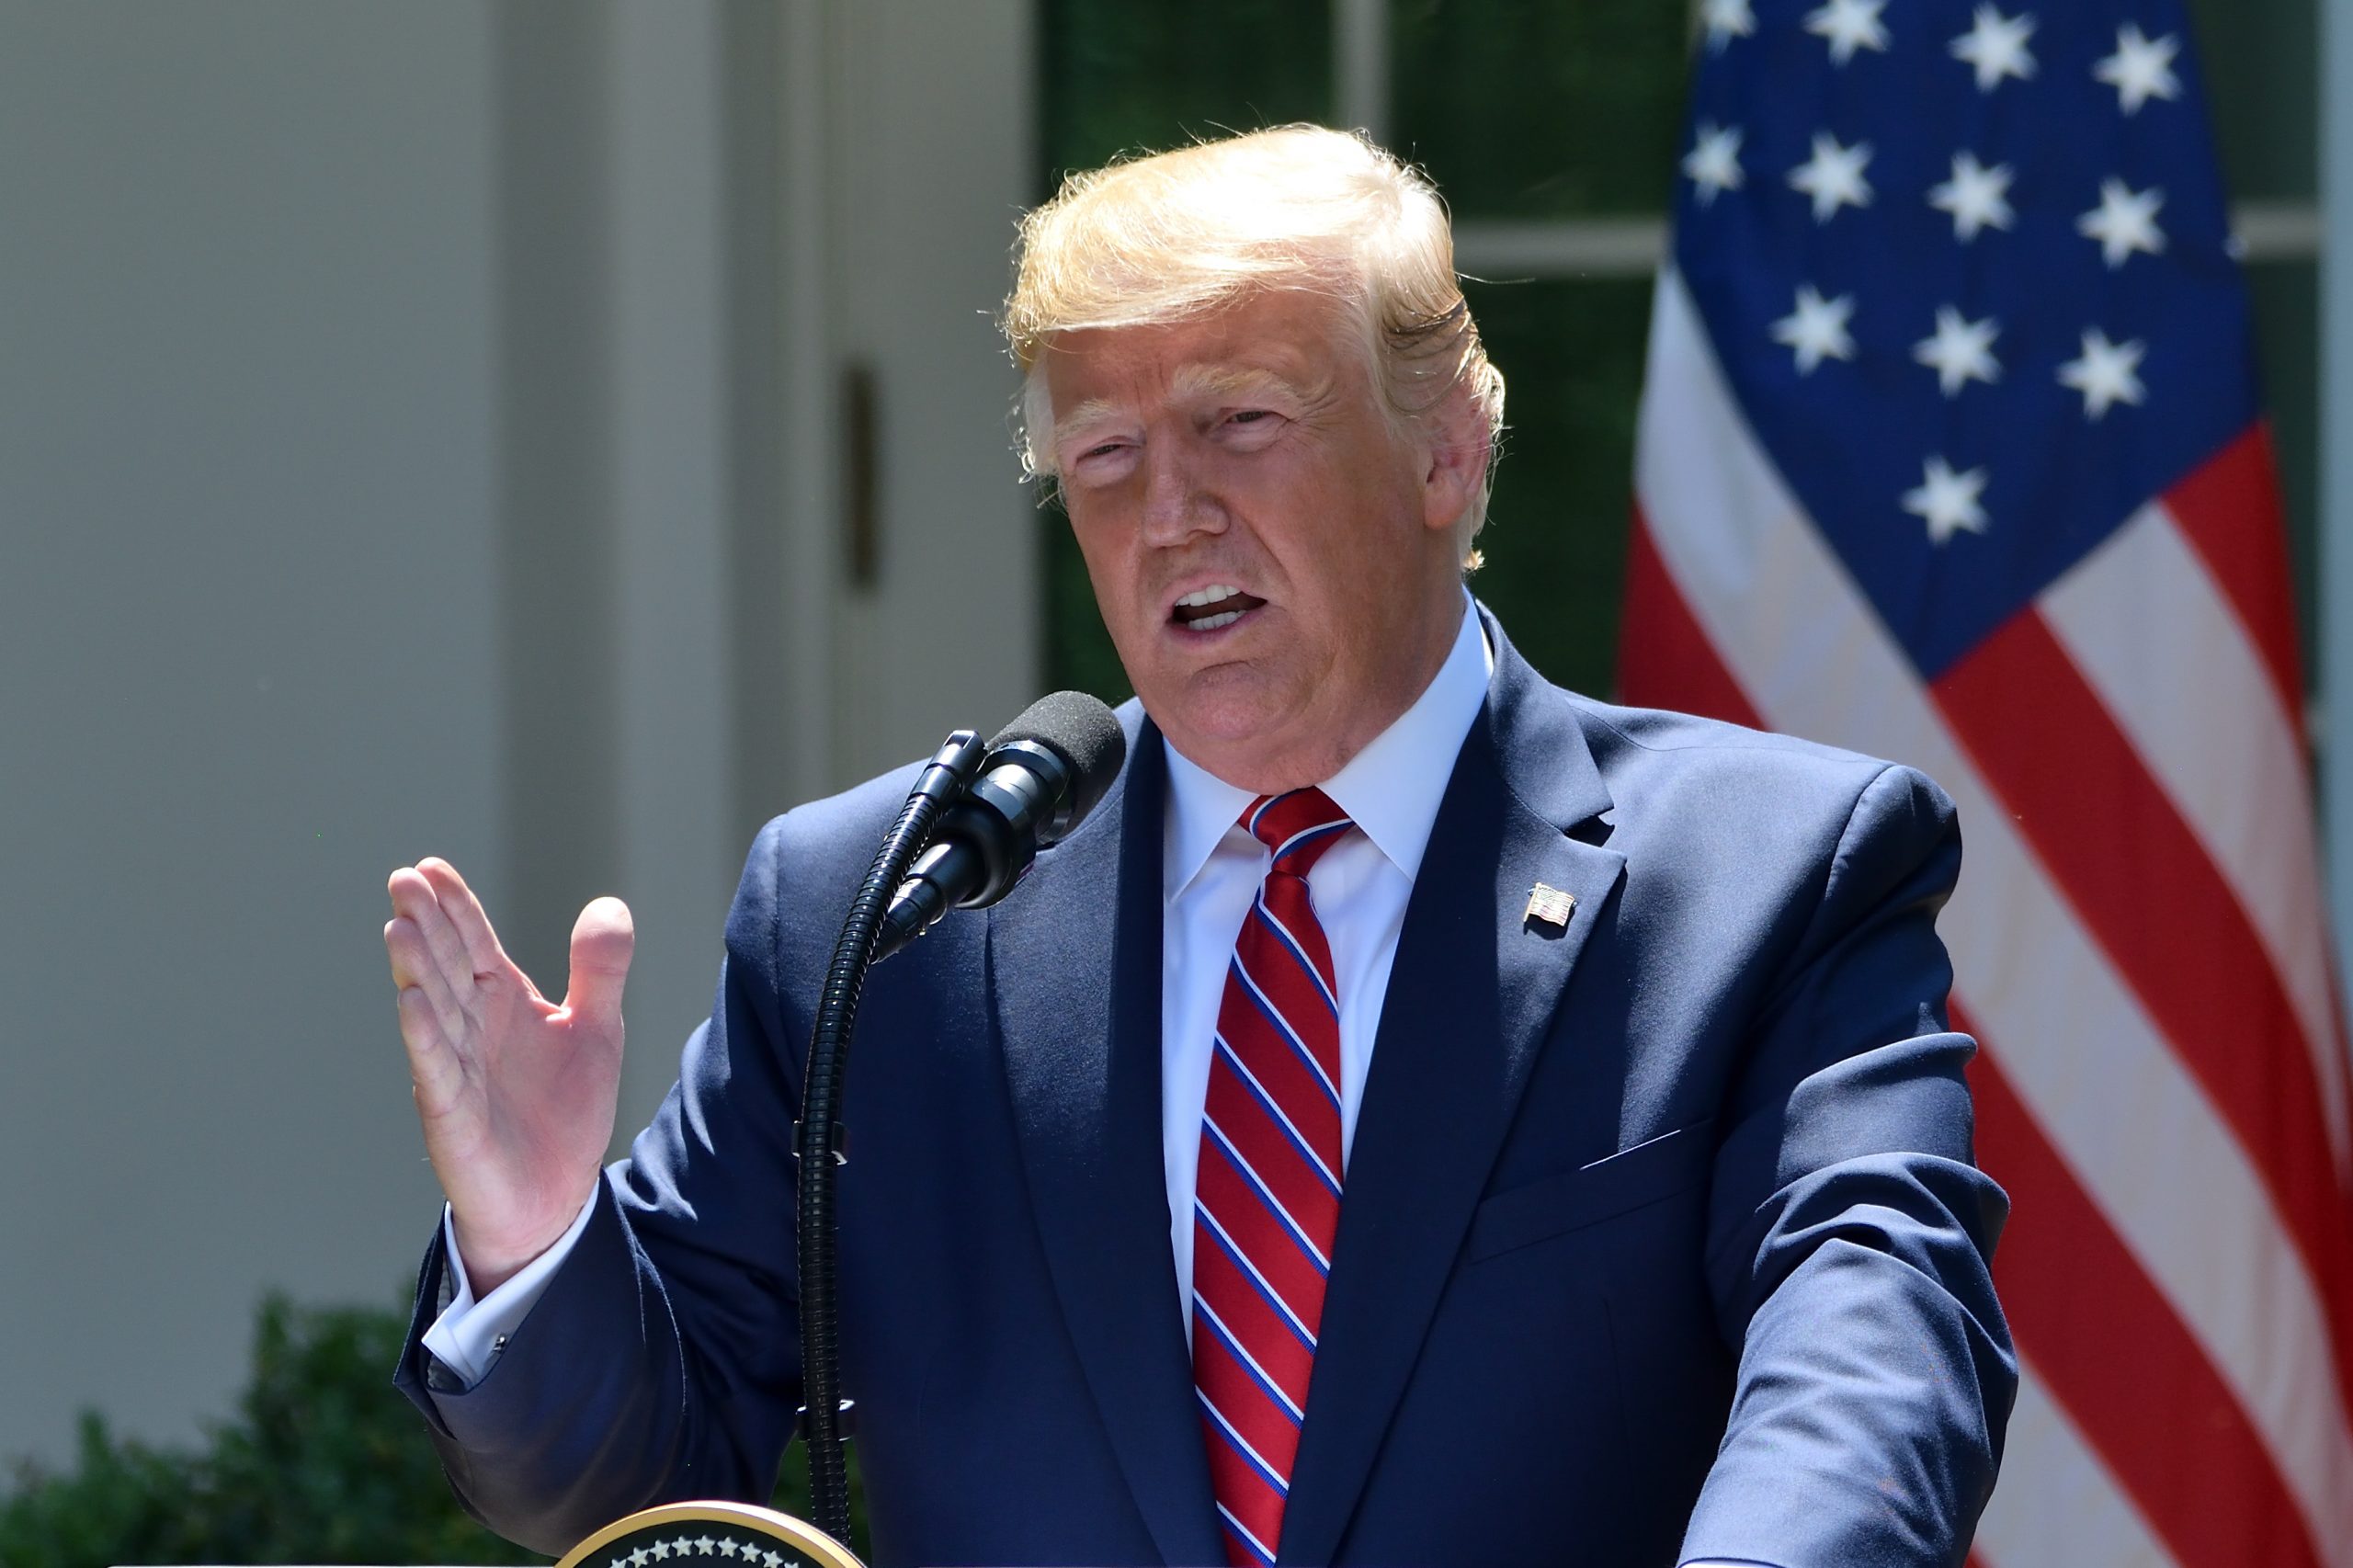 נשיא ארה"ב בבית הלבן ביוני 2019. קרדיט: shutterstock